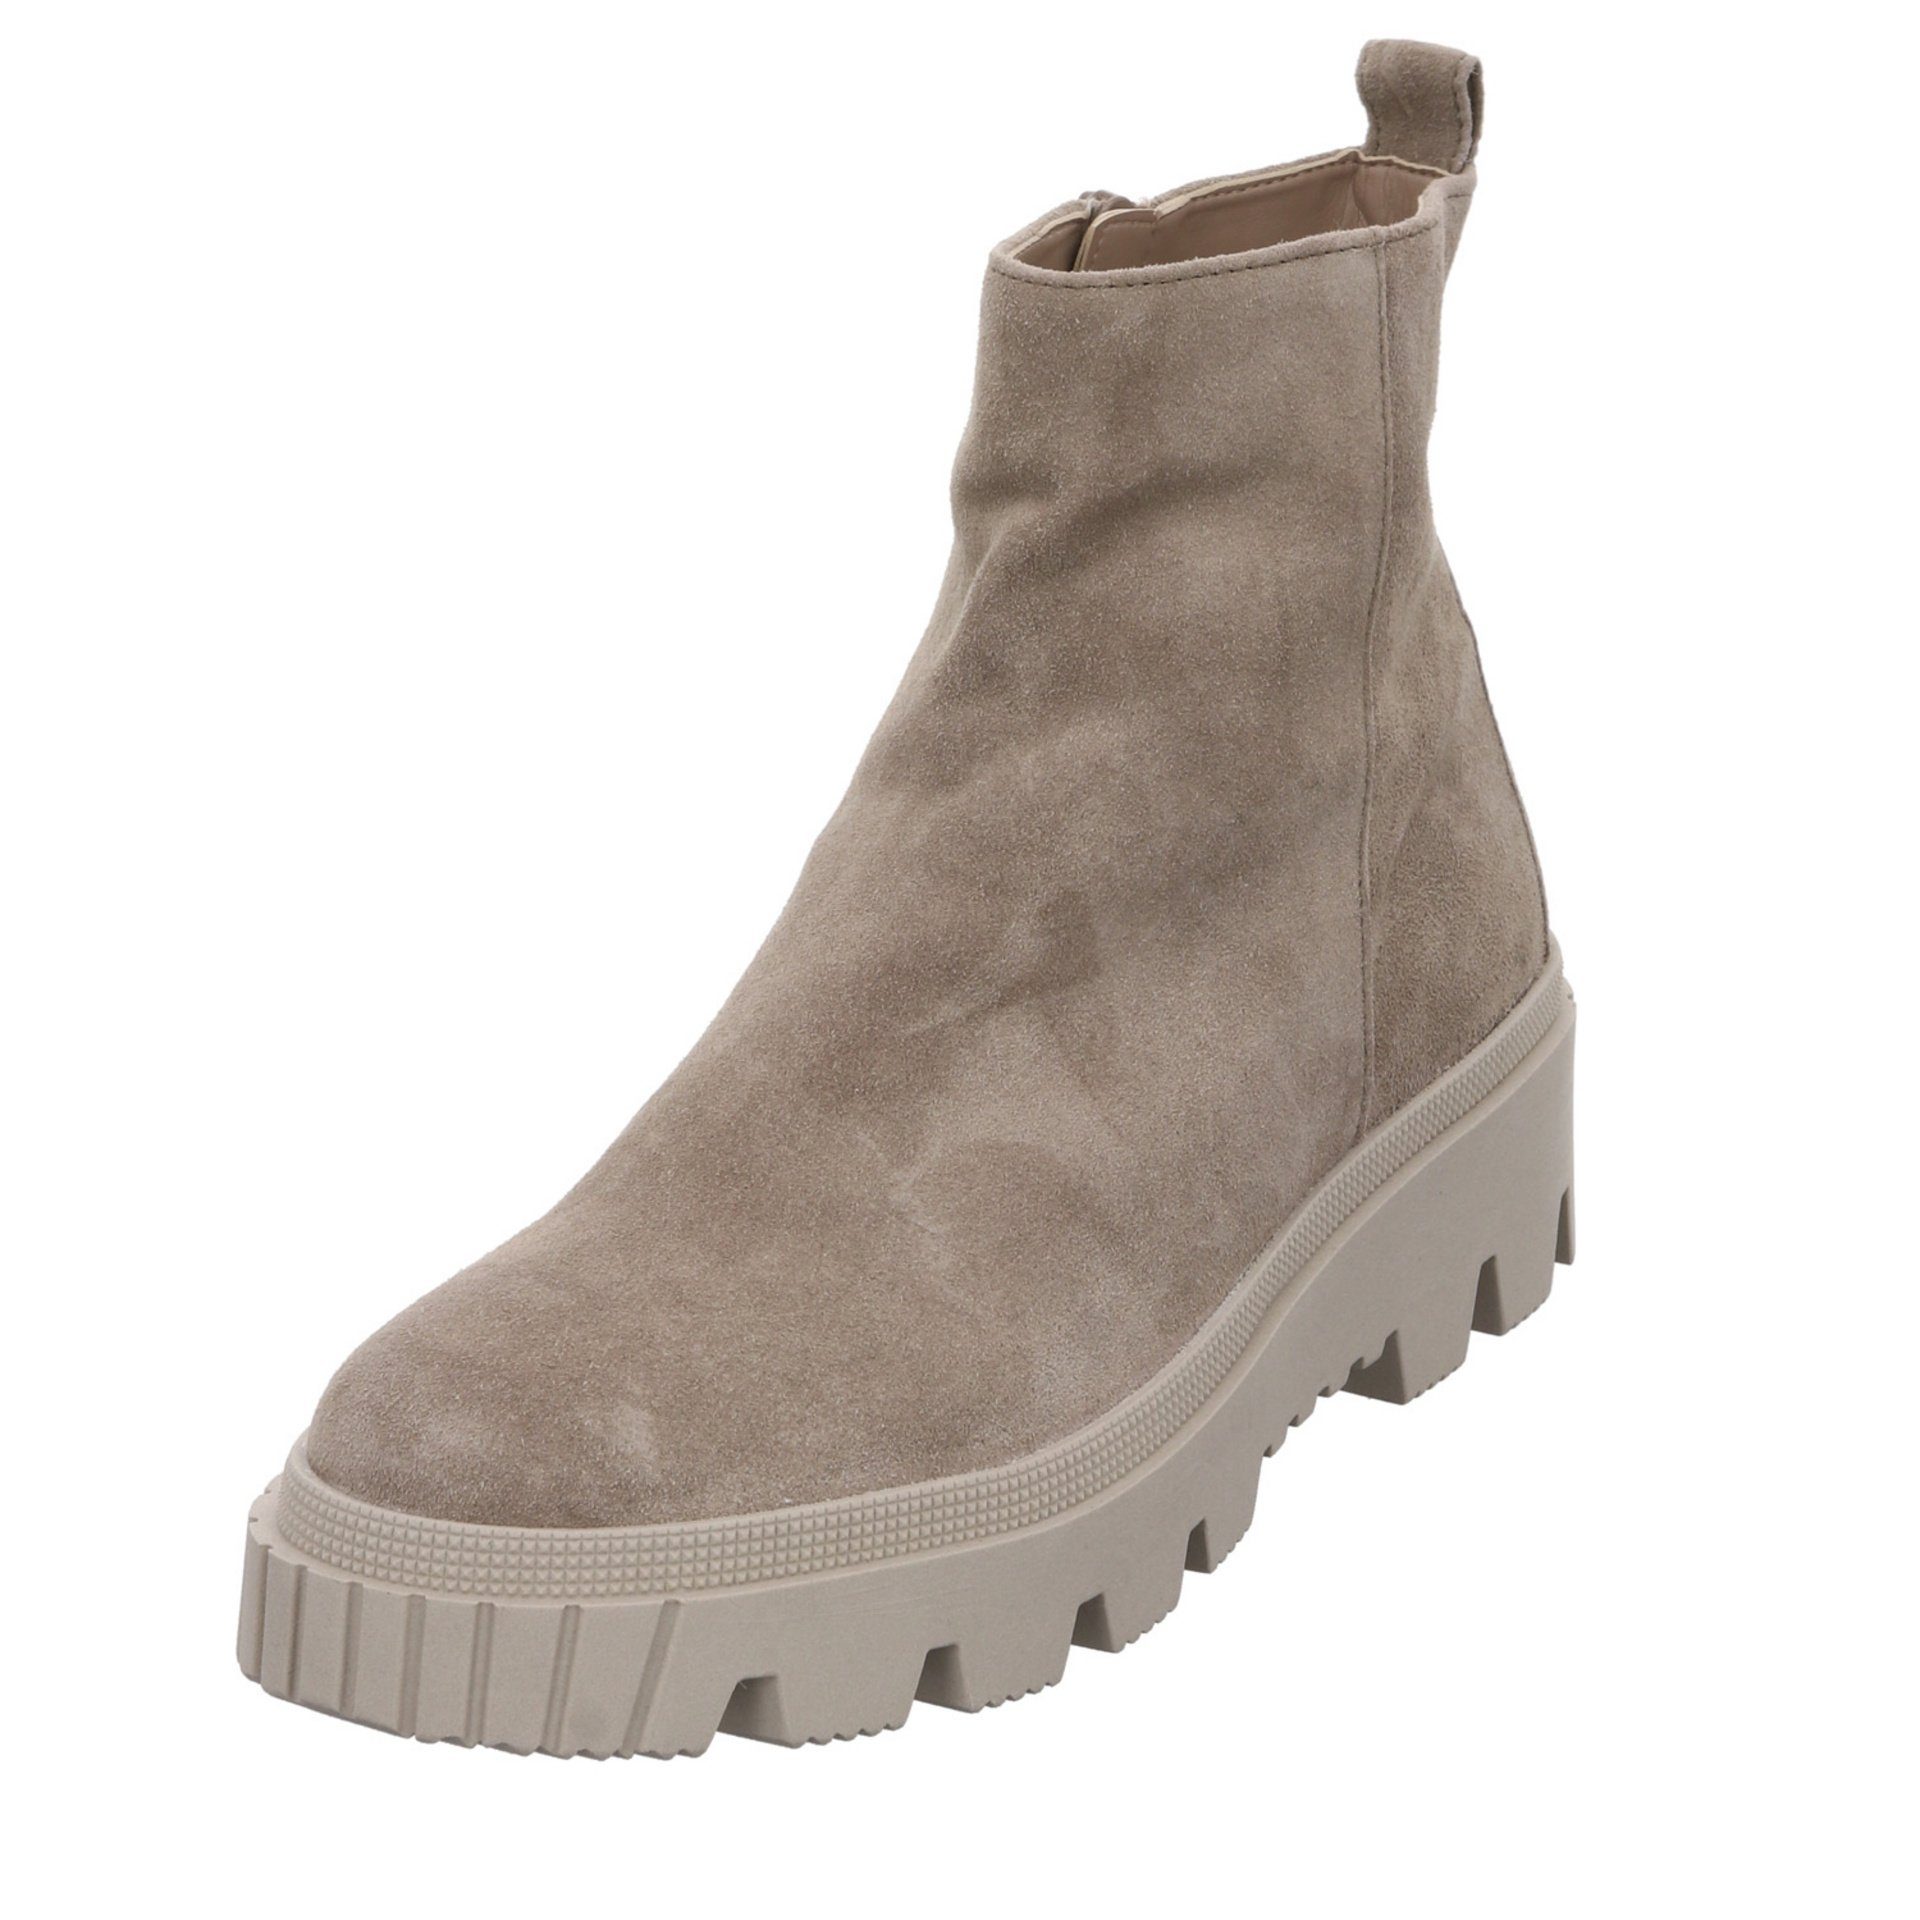 Gabor Elegant Boots Veloursleder Stiefelette (dust) Damen salbei Stiefeletten (07301882) Freizeit Schuhe